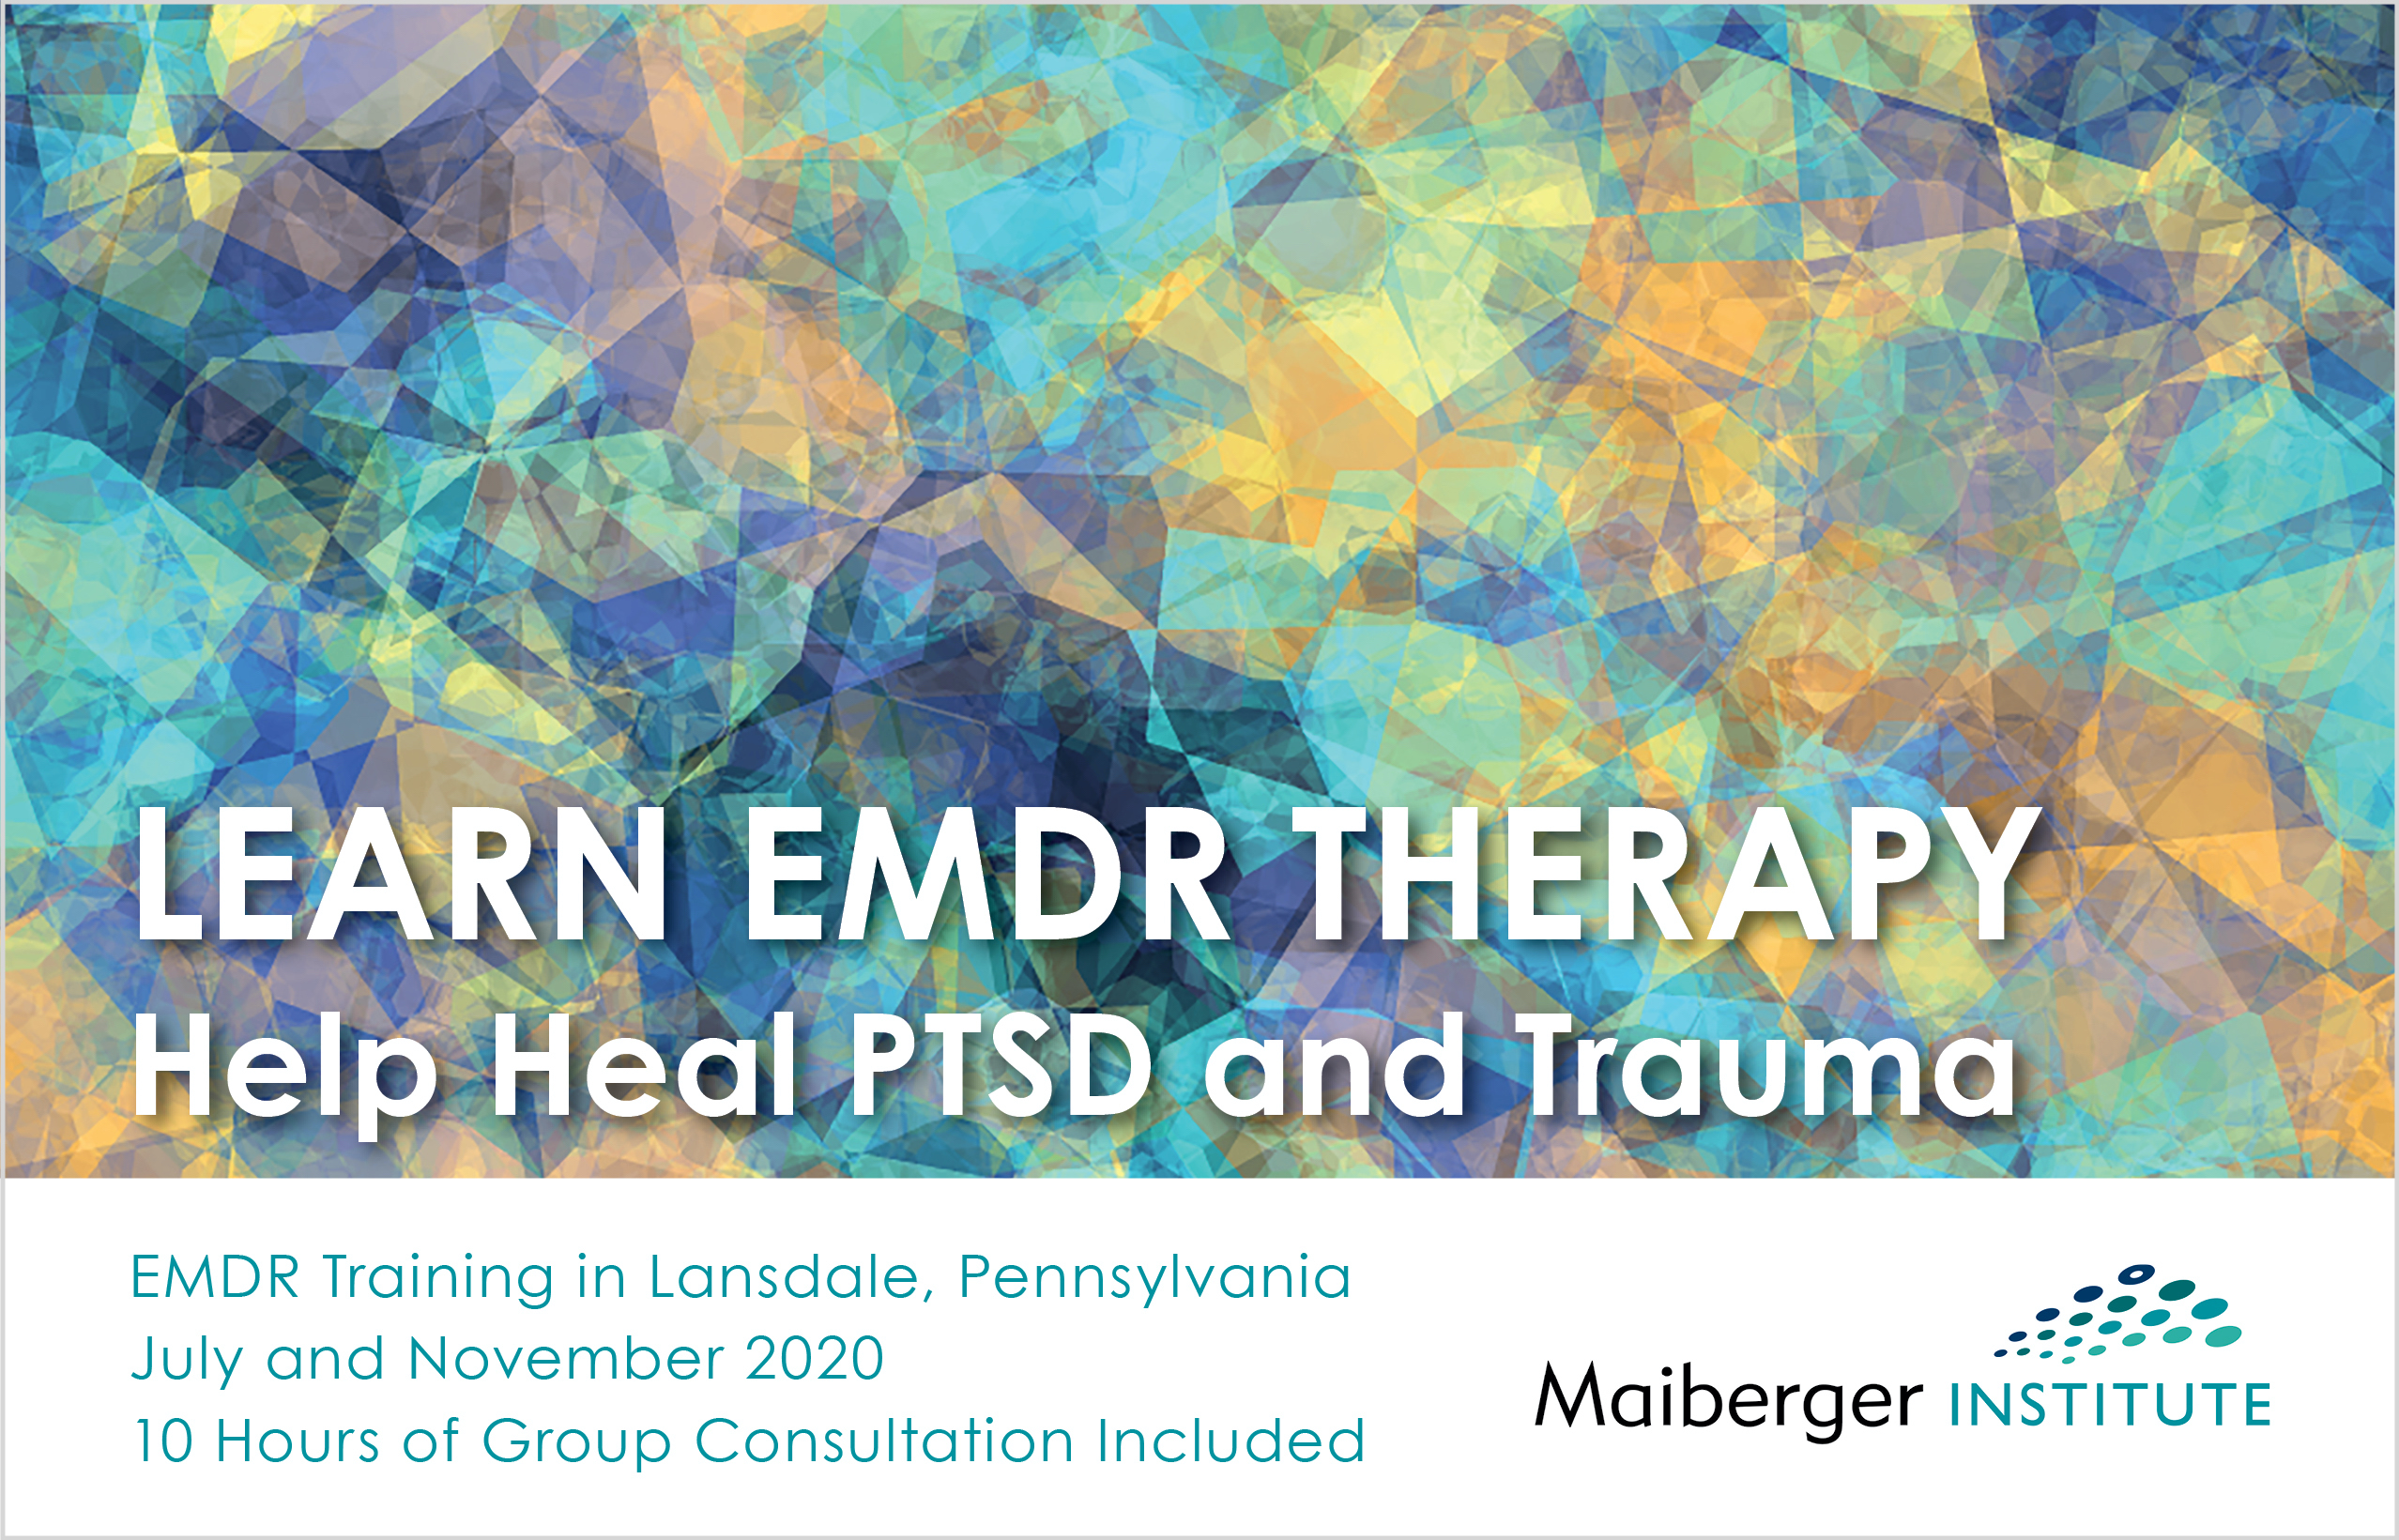 EMDR Training in Lansdale Pennsylvania July and November 2020 - Maiberger Institute - EMDR Event Calendar